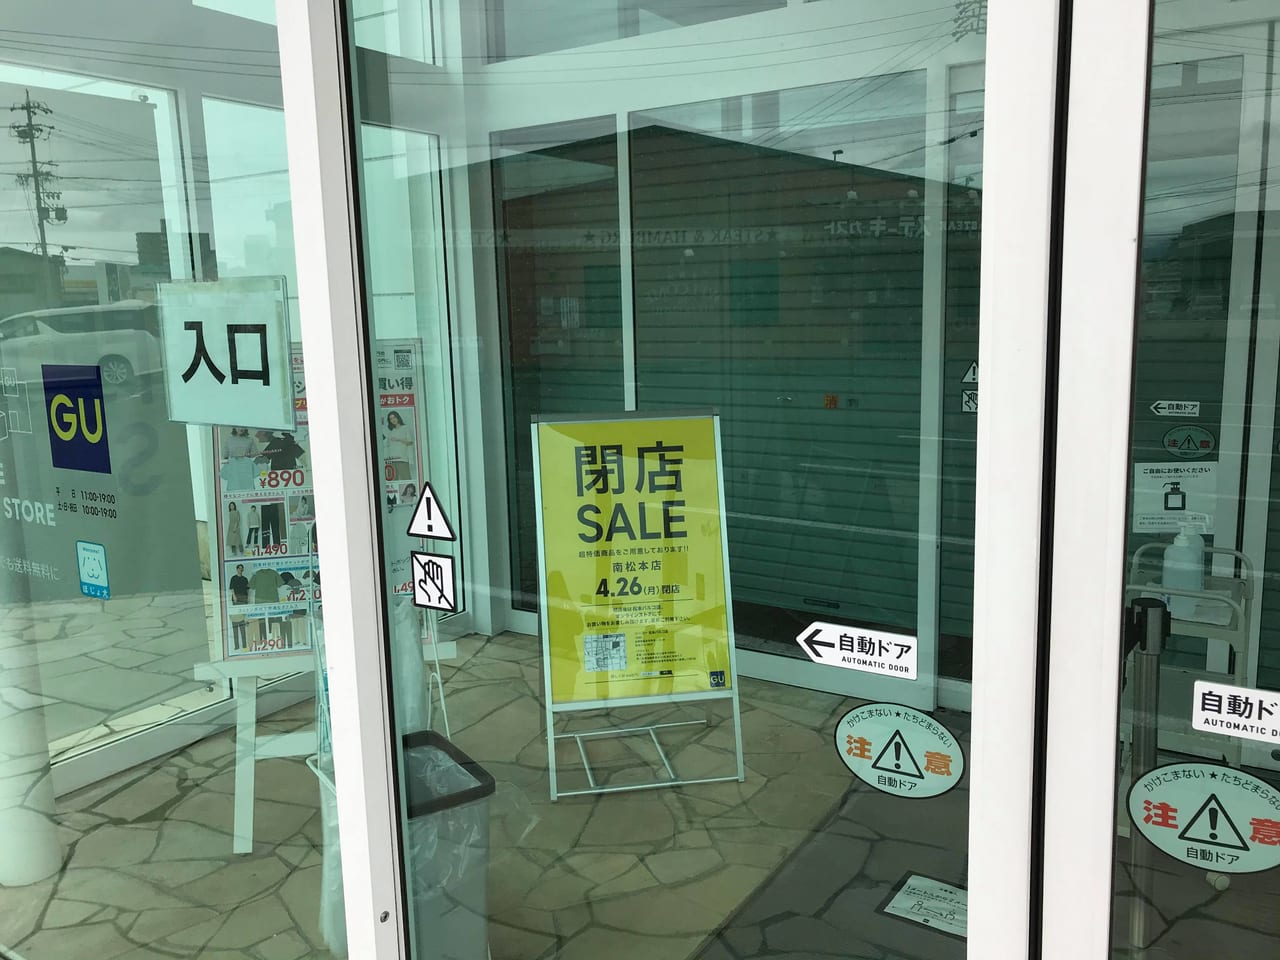 松本市 ステーキガスト松本芳野店に引き続き Gu南松本店も21年4月26日で閉店ということで この場所はどうなるのでしょうか 号外net 松本